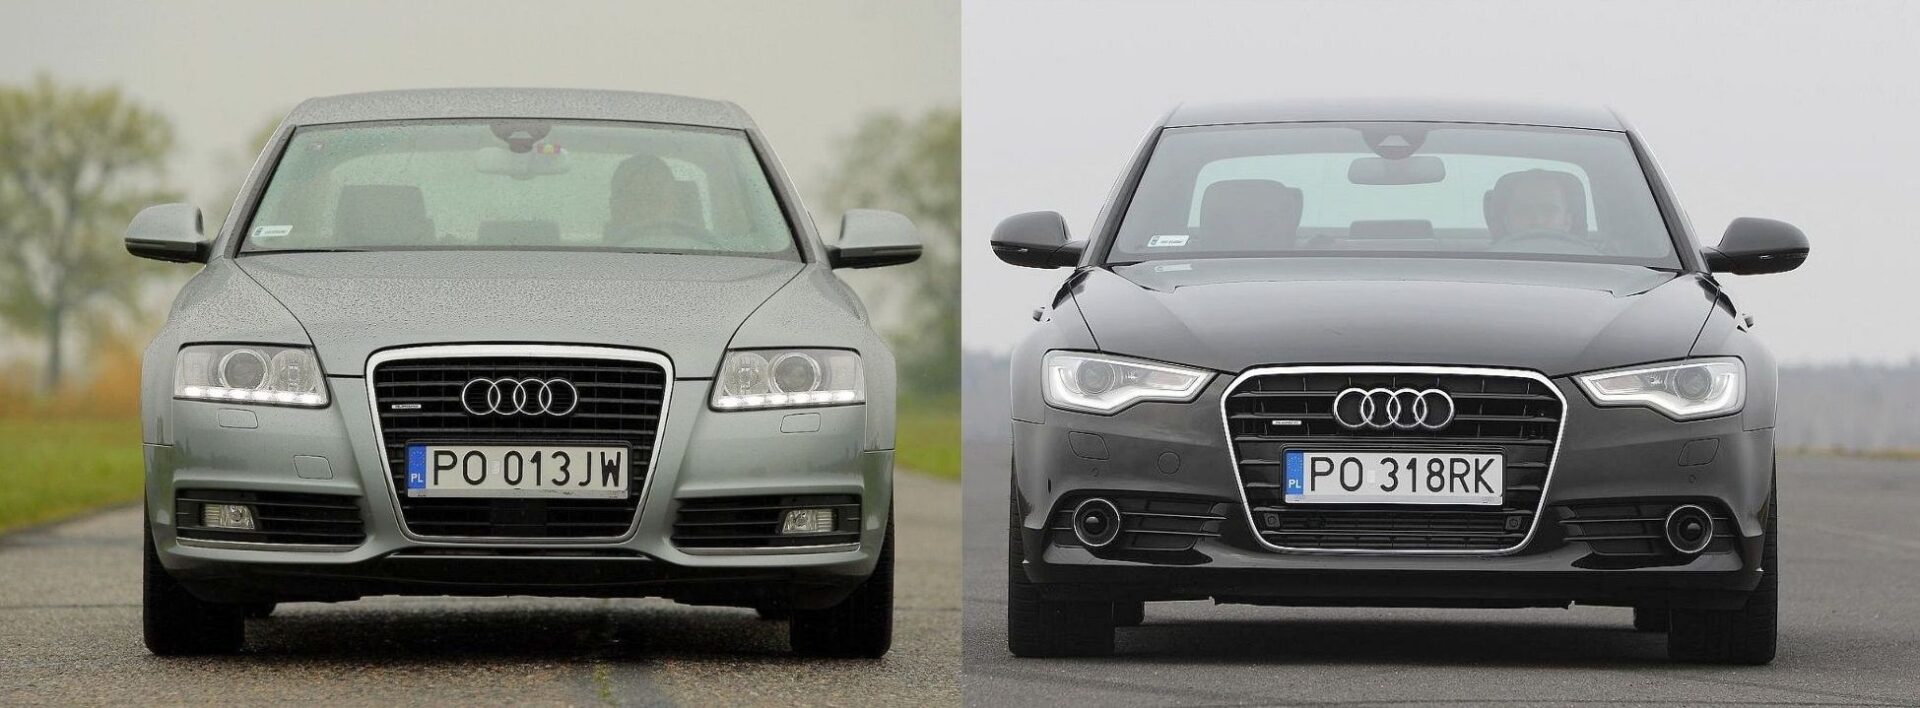 Używane Audi A6 (C6) i Audi A6 (C7) którą generację wybrać?